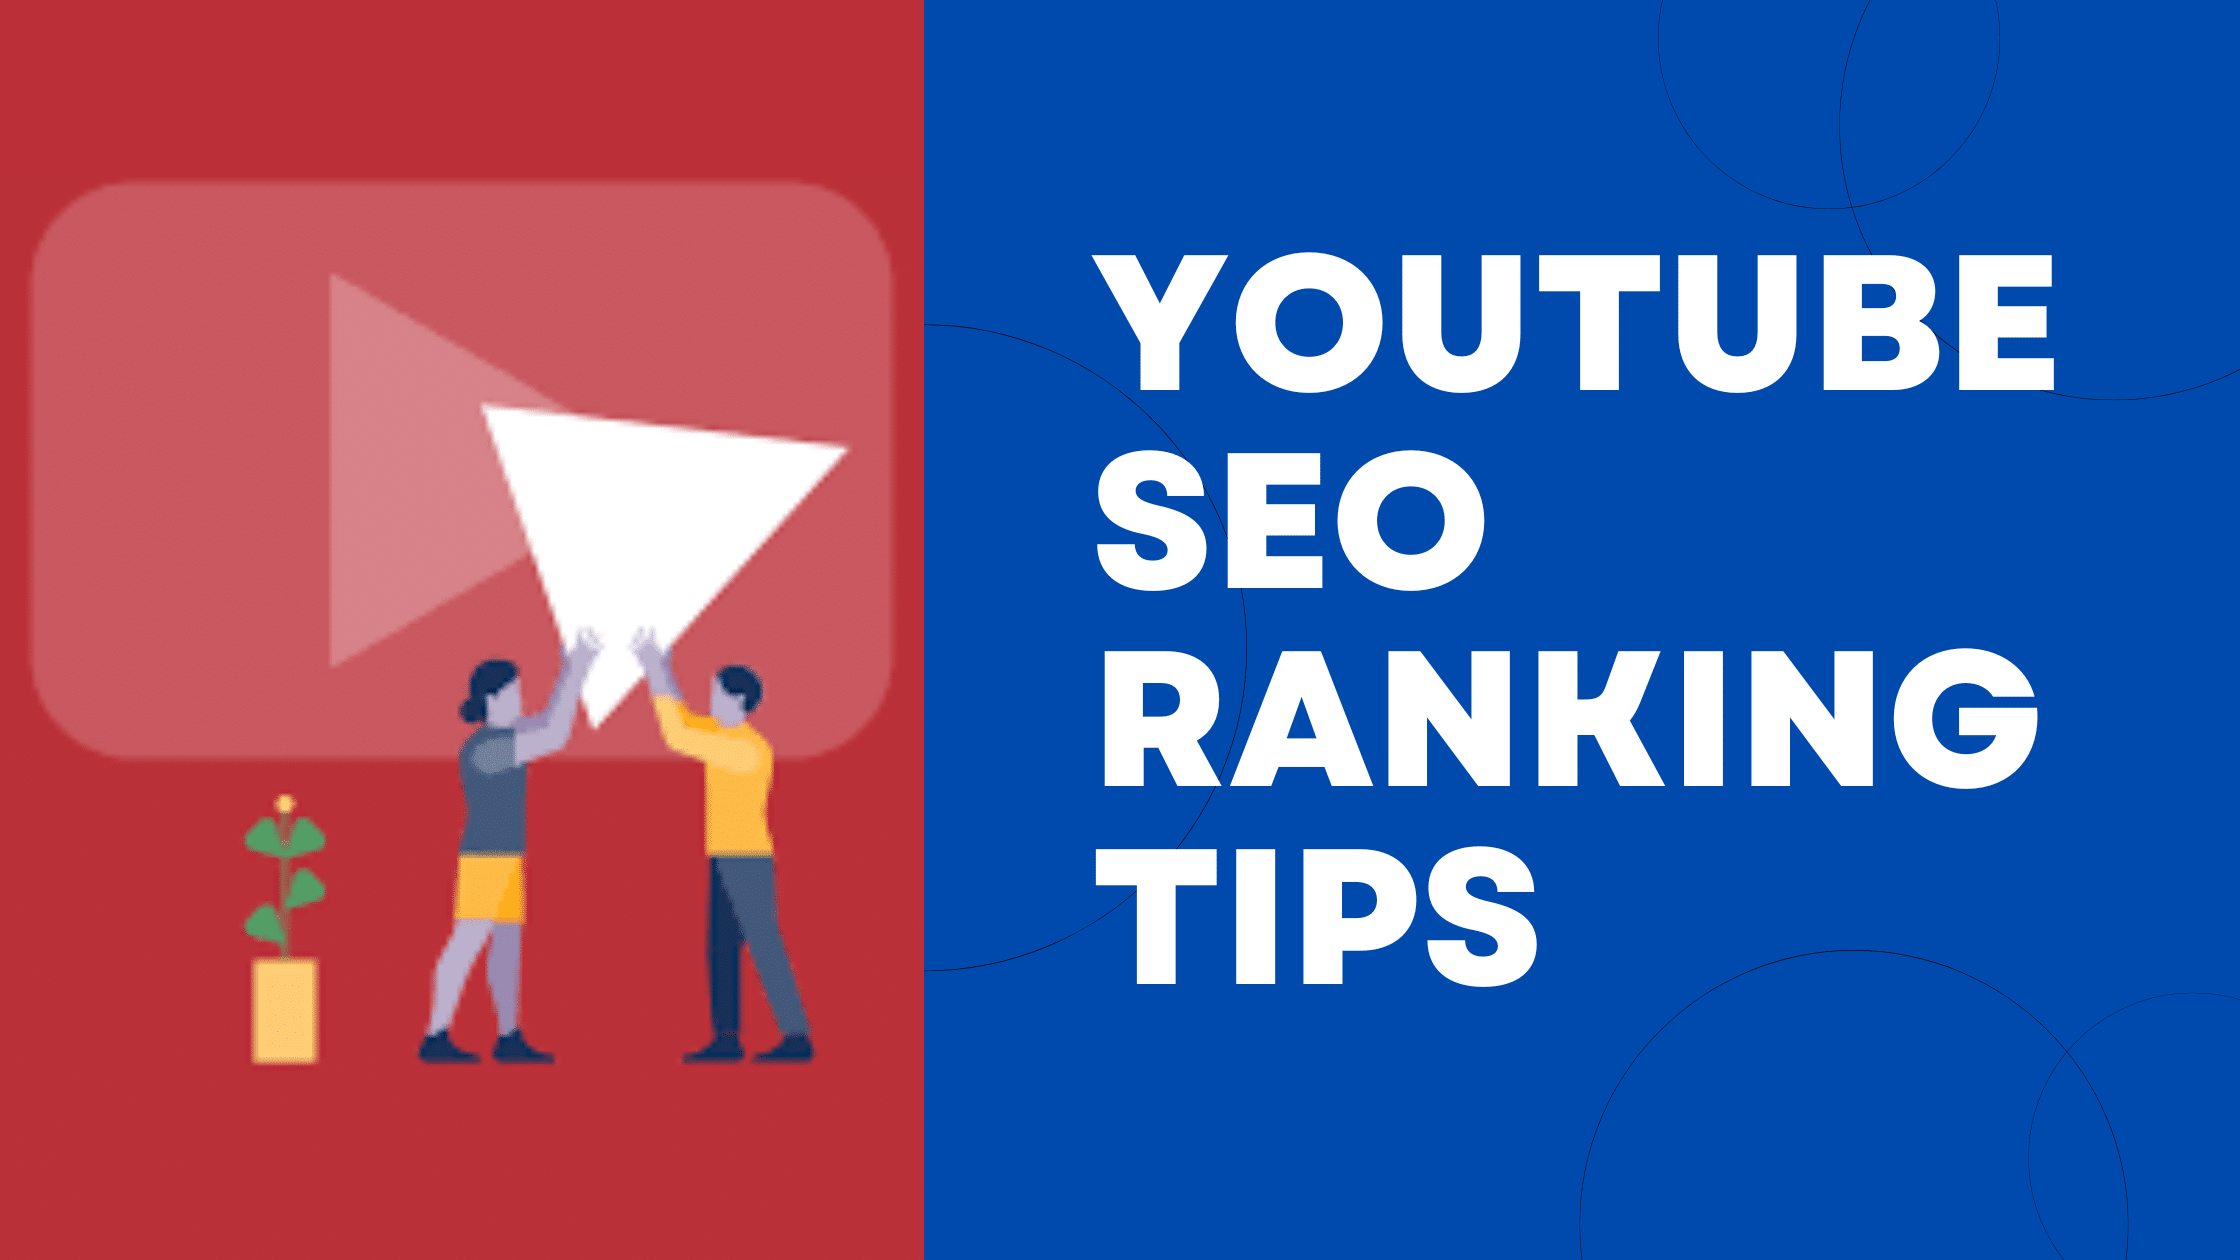 YouTube SEO Ranking Tips